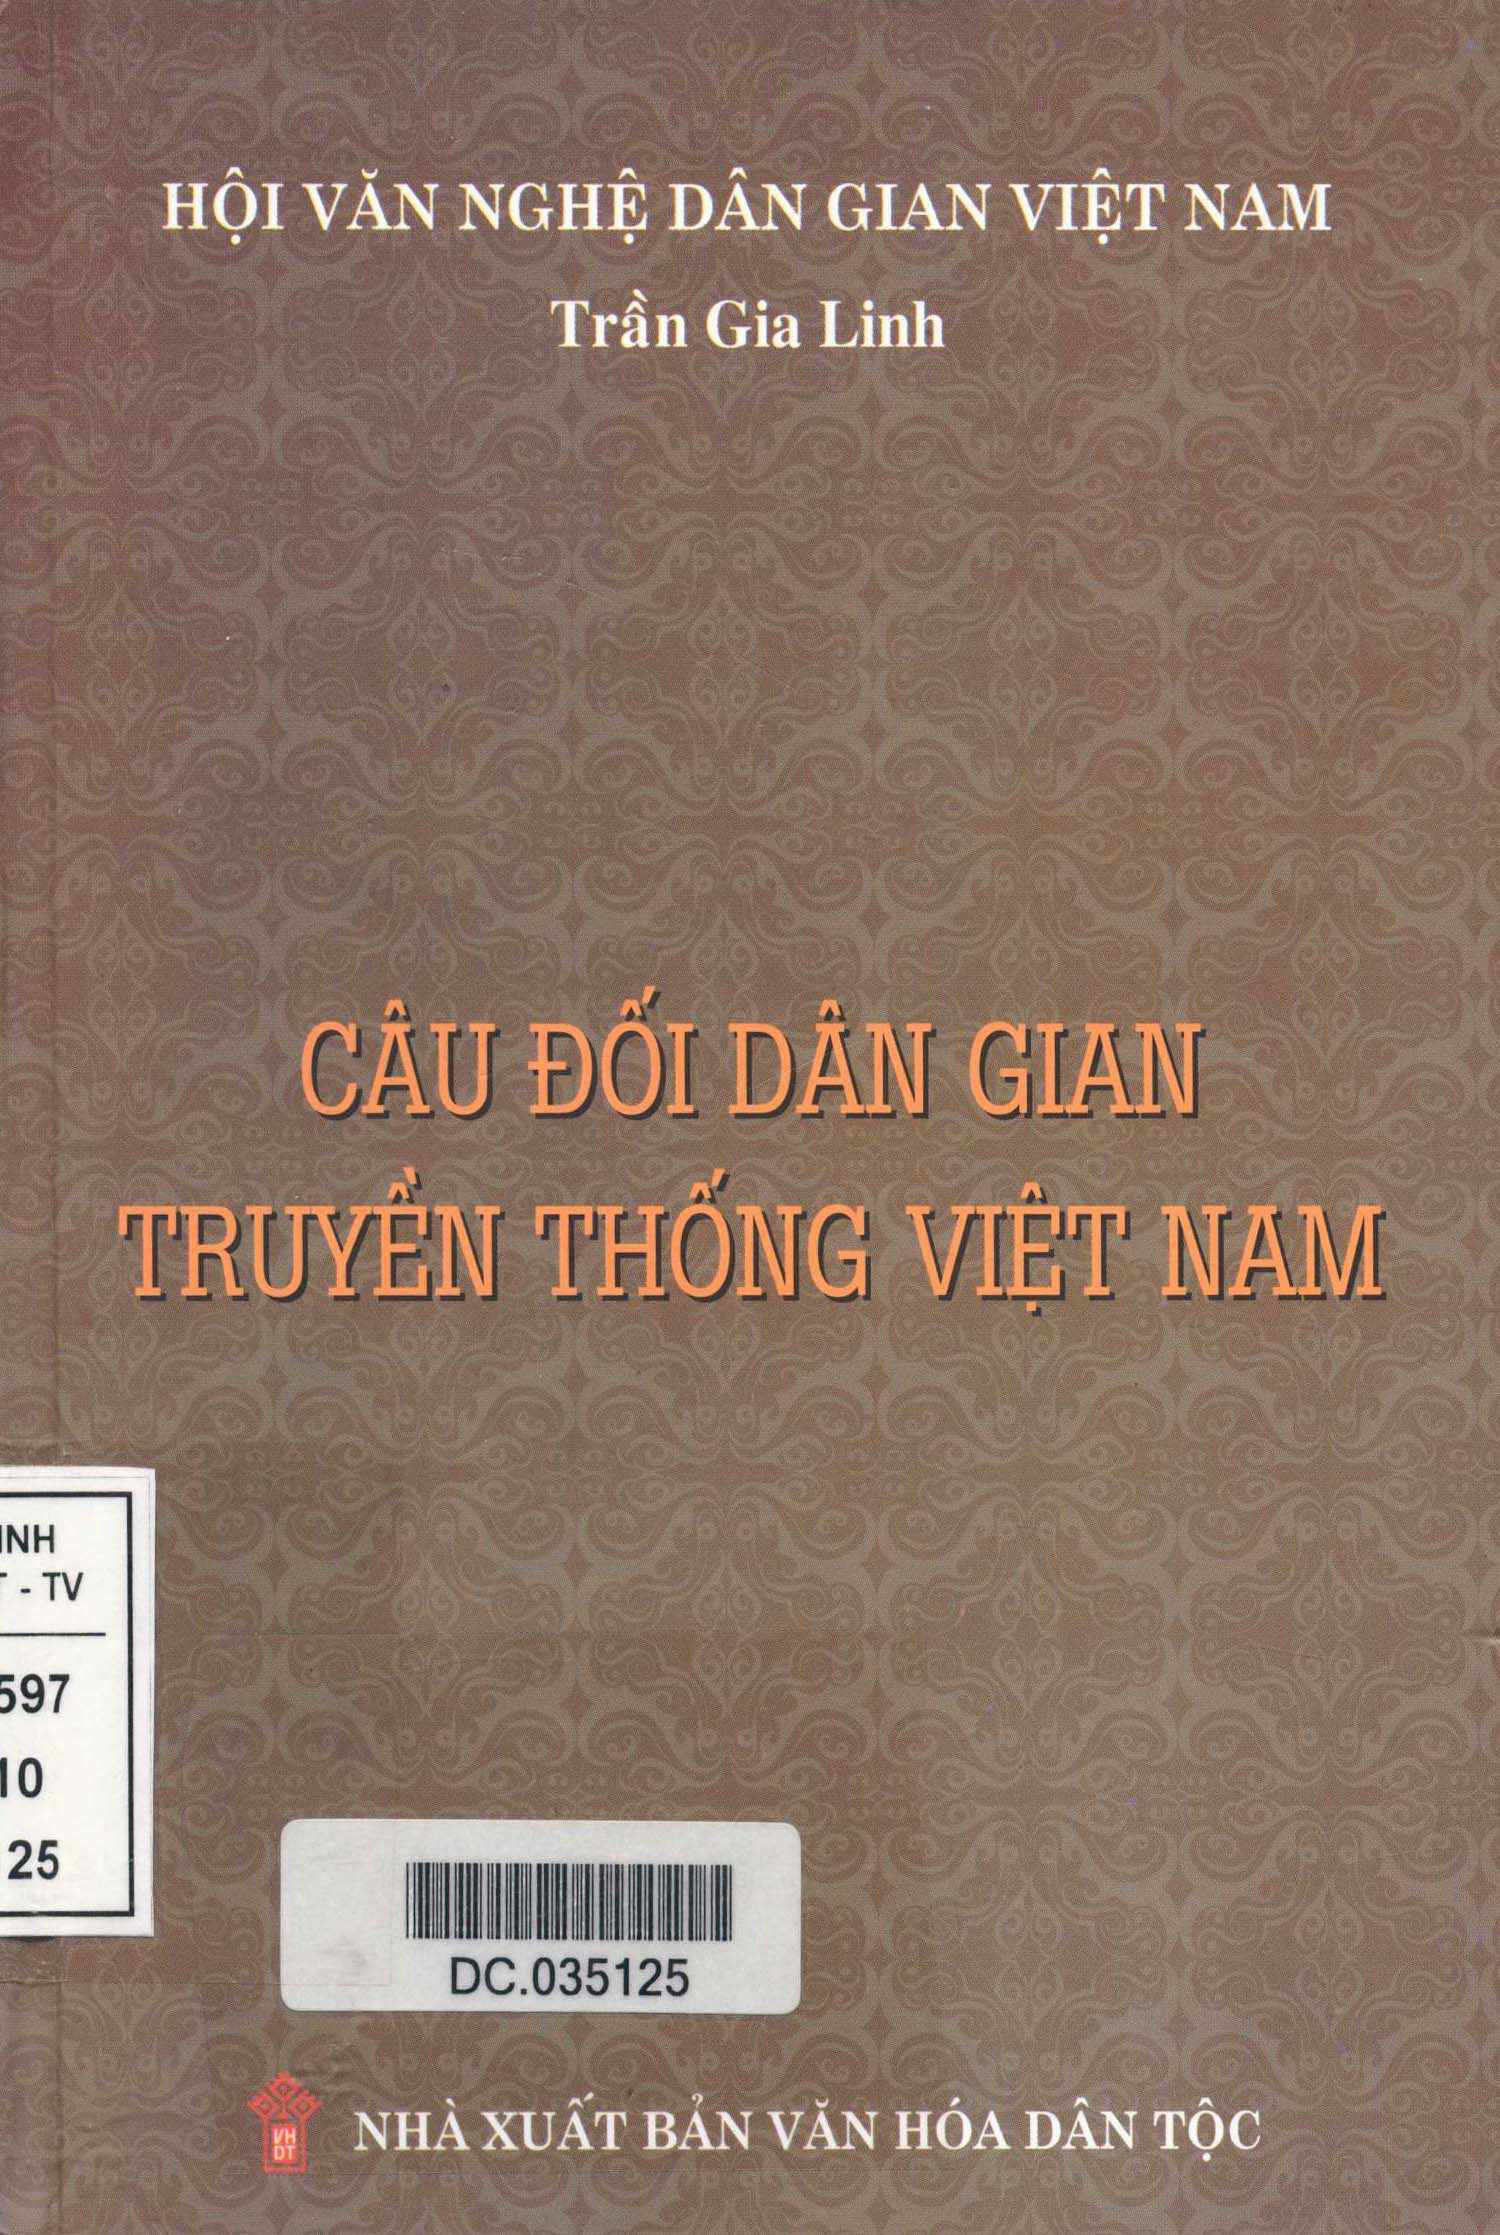 Câu đối dân gian truyền thống Việt Nam